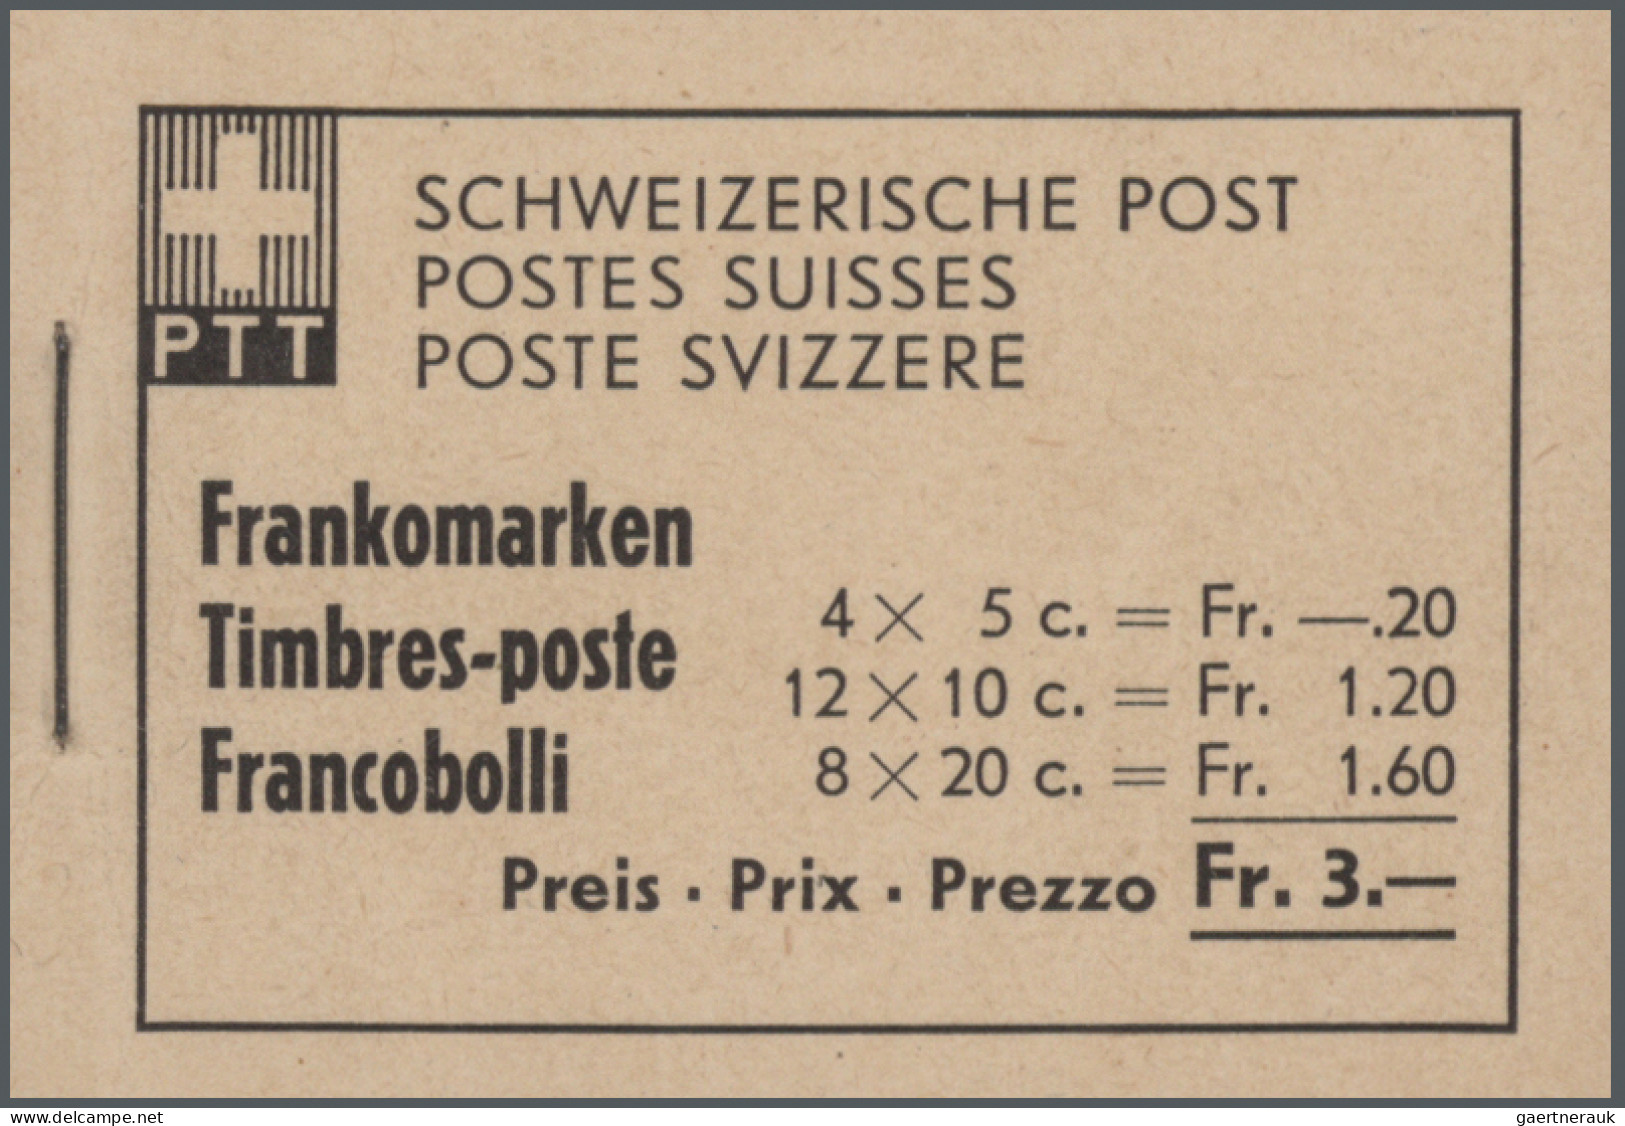 Schweiz - Markenheftchen: 1950-2010 Sammlung von mehr als 200 Markenheftchen all